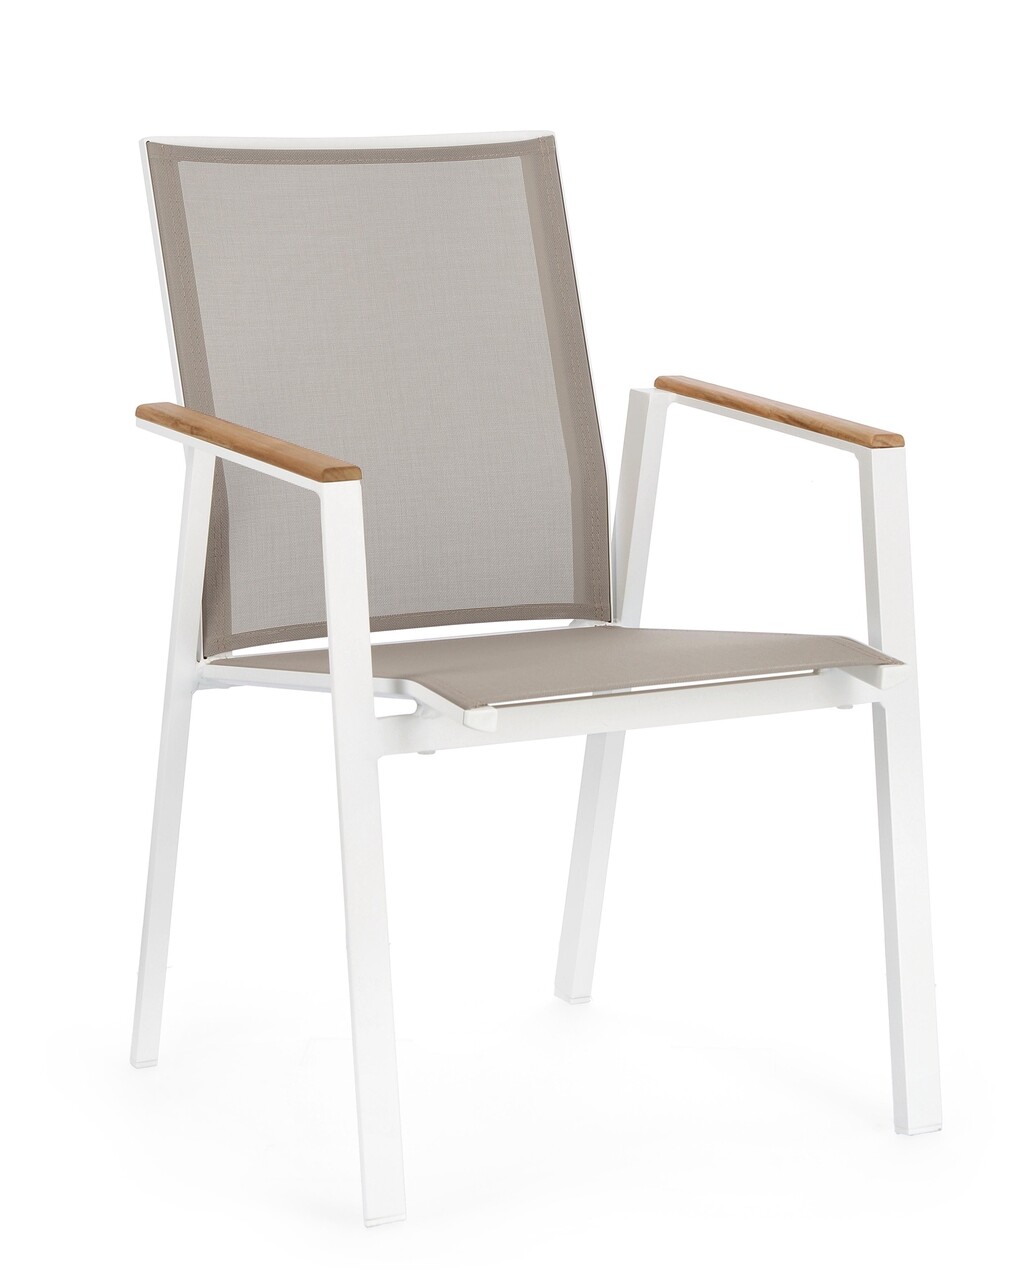 Cameron kerti szék, bizzotto, 59 x 61 x 88 cm, alumínium/textilén, fehér